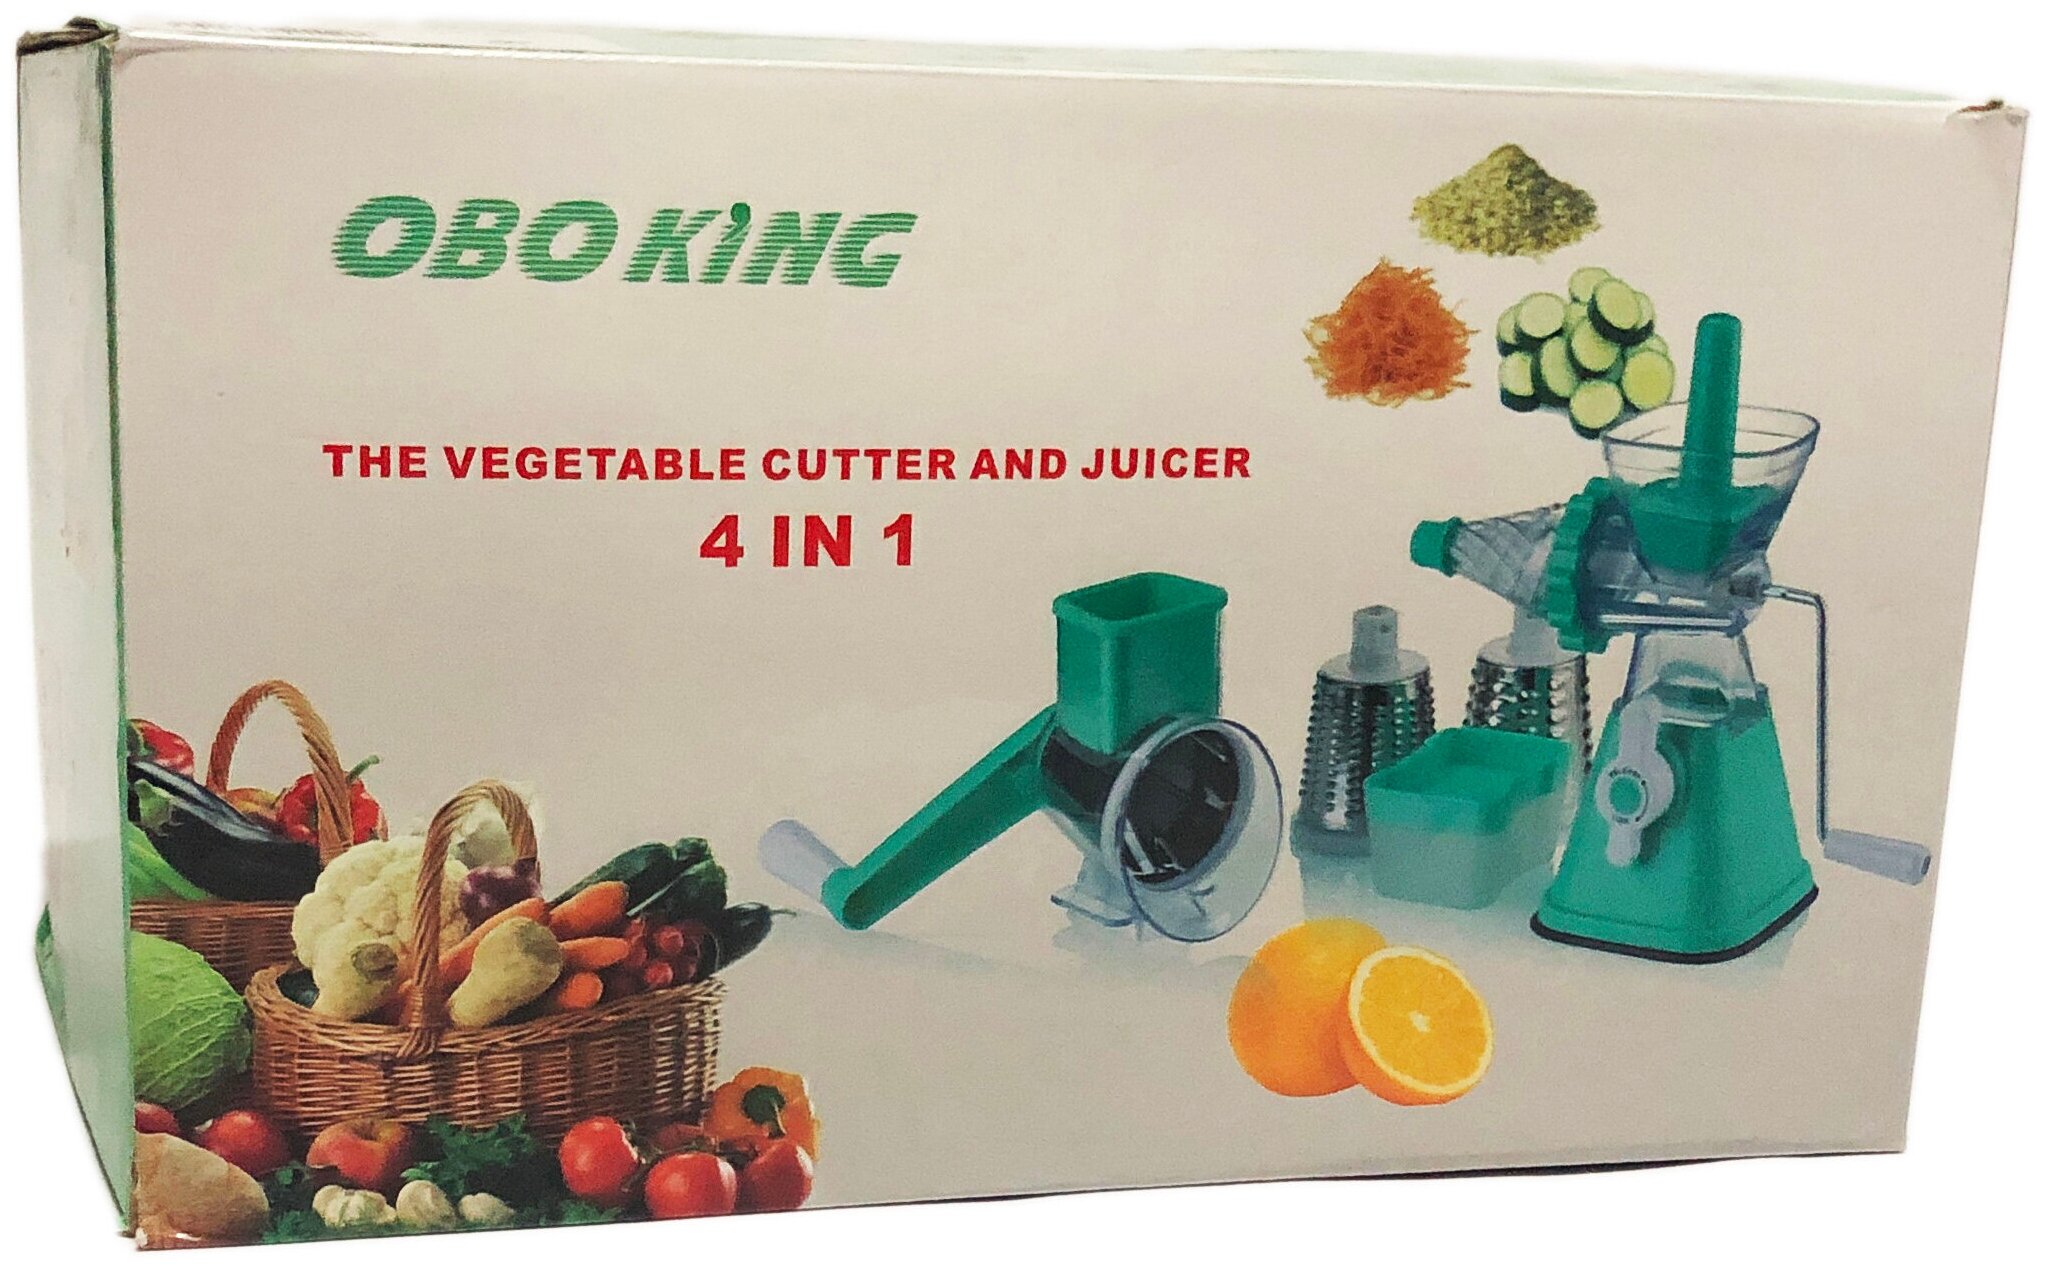 Измельчитель для овощей и фруктов 4в1 OboKing The Vegetable Cutter and Juicer 4in1 оптом - Фото №4